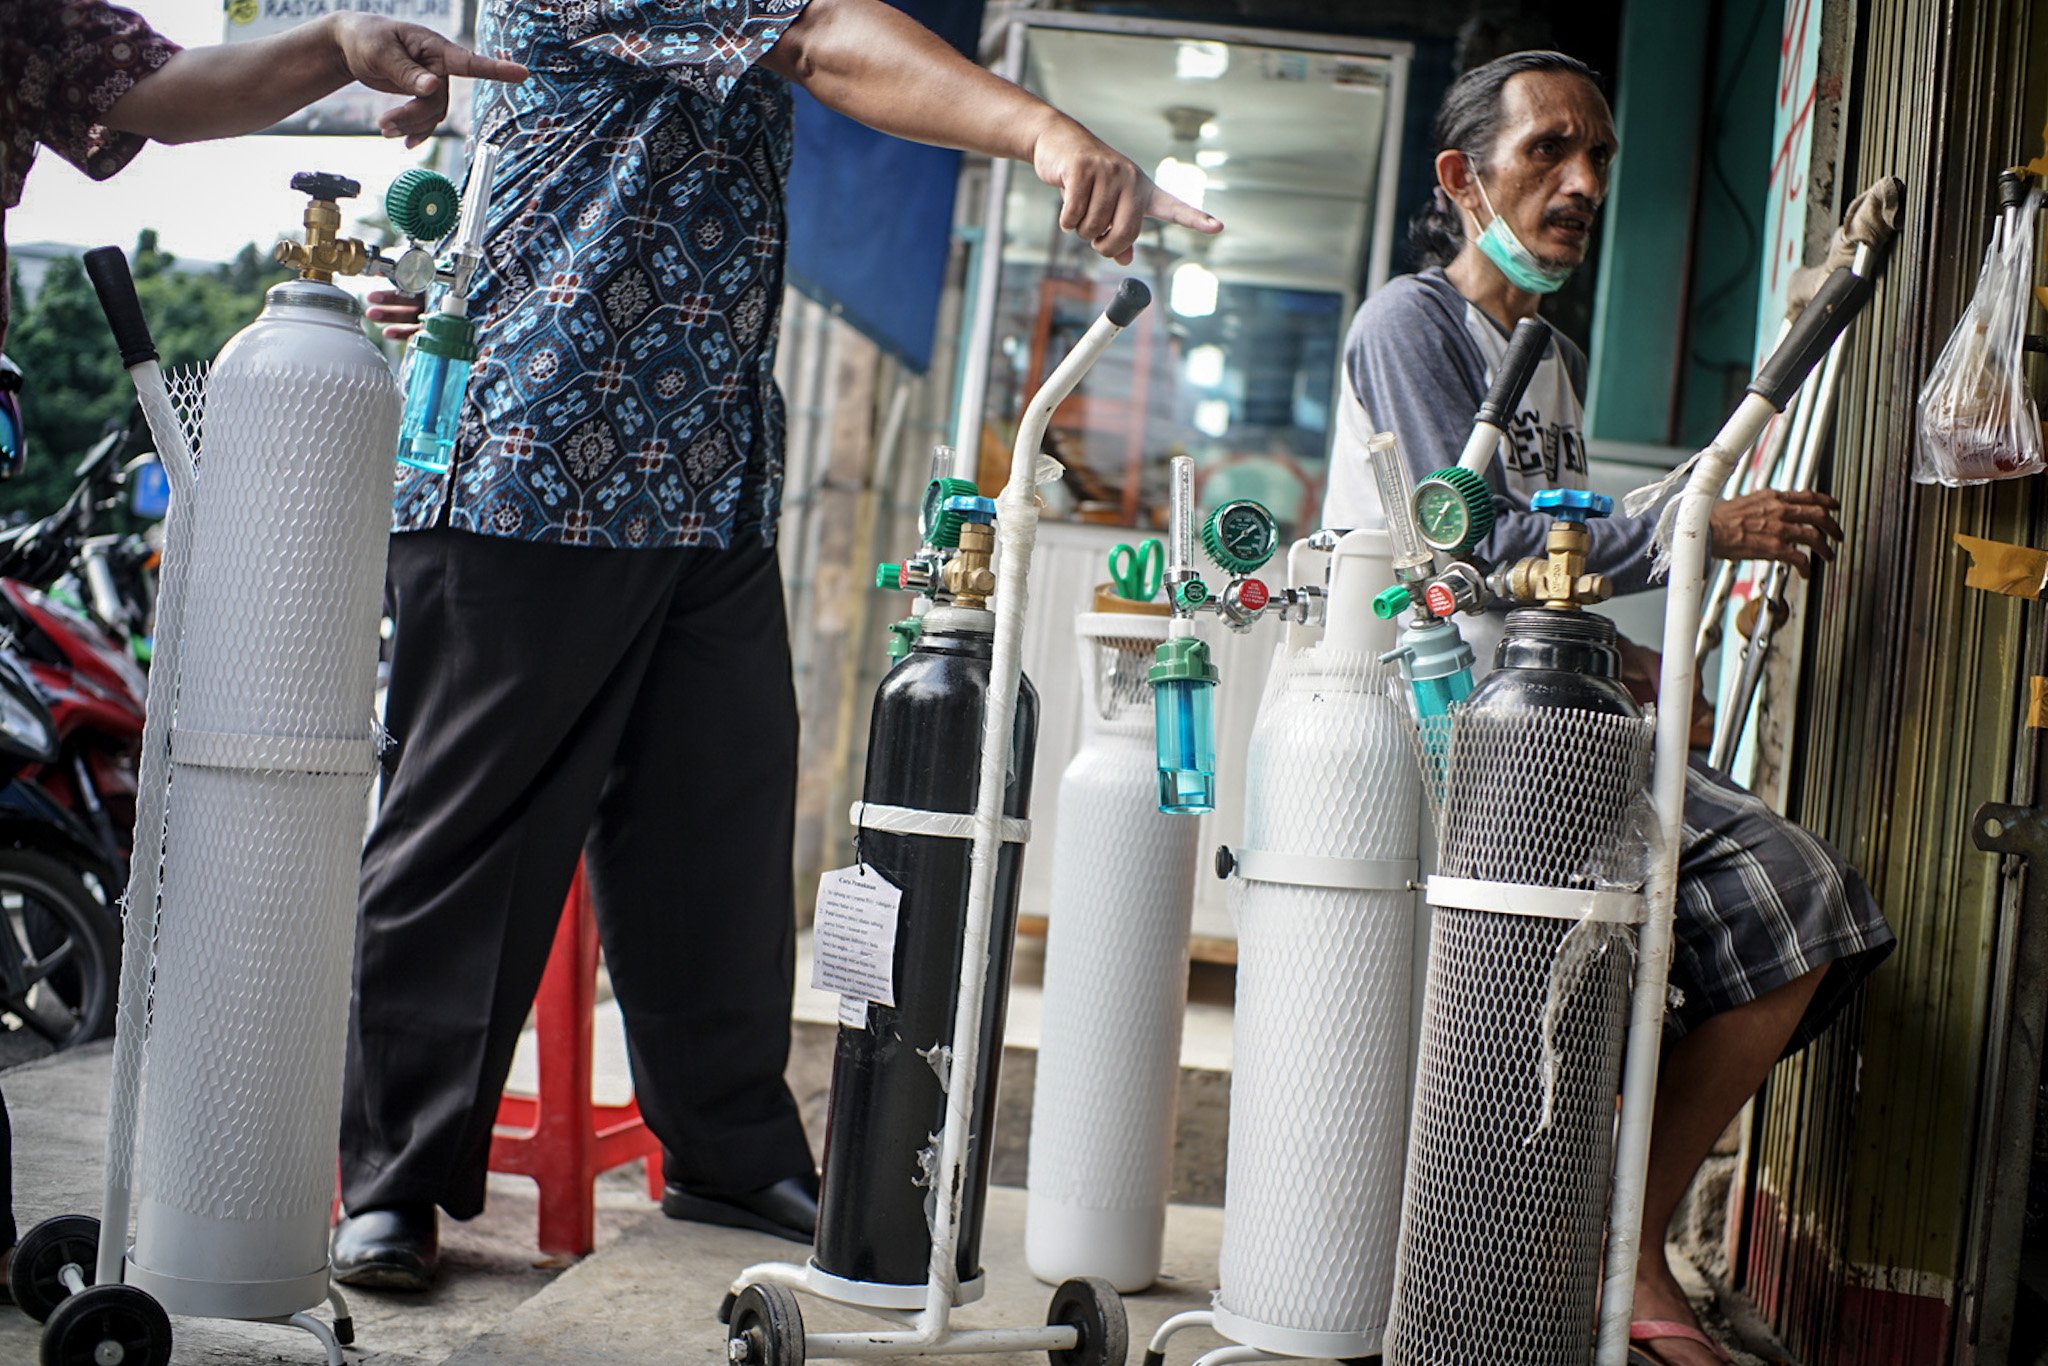 Antrean terjadi di salah satu gerai isi ulang oksigen medis di wilayah Manggarai, Jakarta Selatan, Kamis, (25/6/2021). Seiring dengan meningkatnya jumlah kasus Covid-19 di Jakarta, Kebutuhan isi ulang oksigen medis rumahan alami peningkatan.